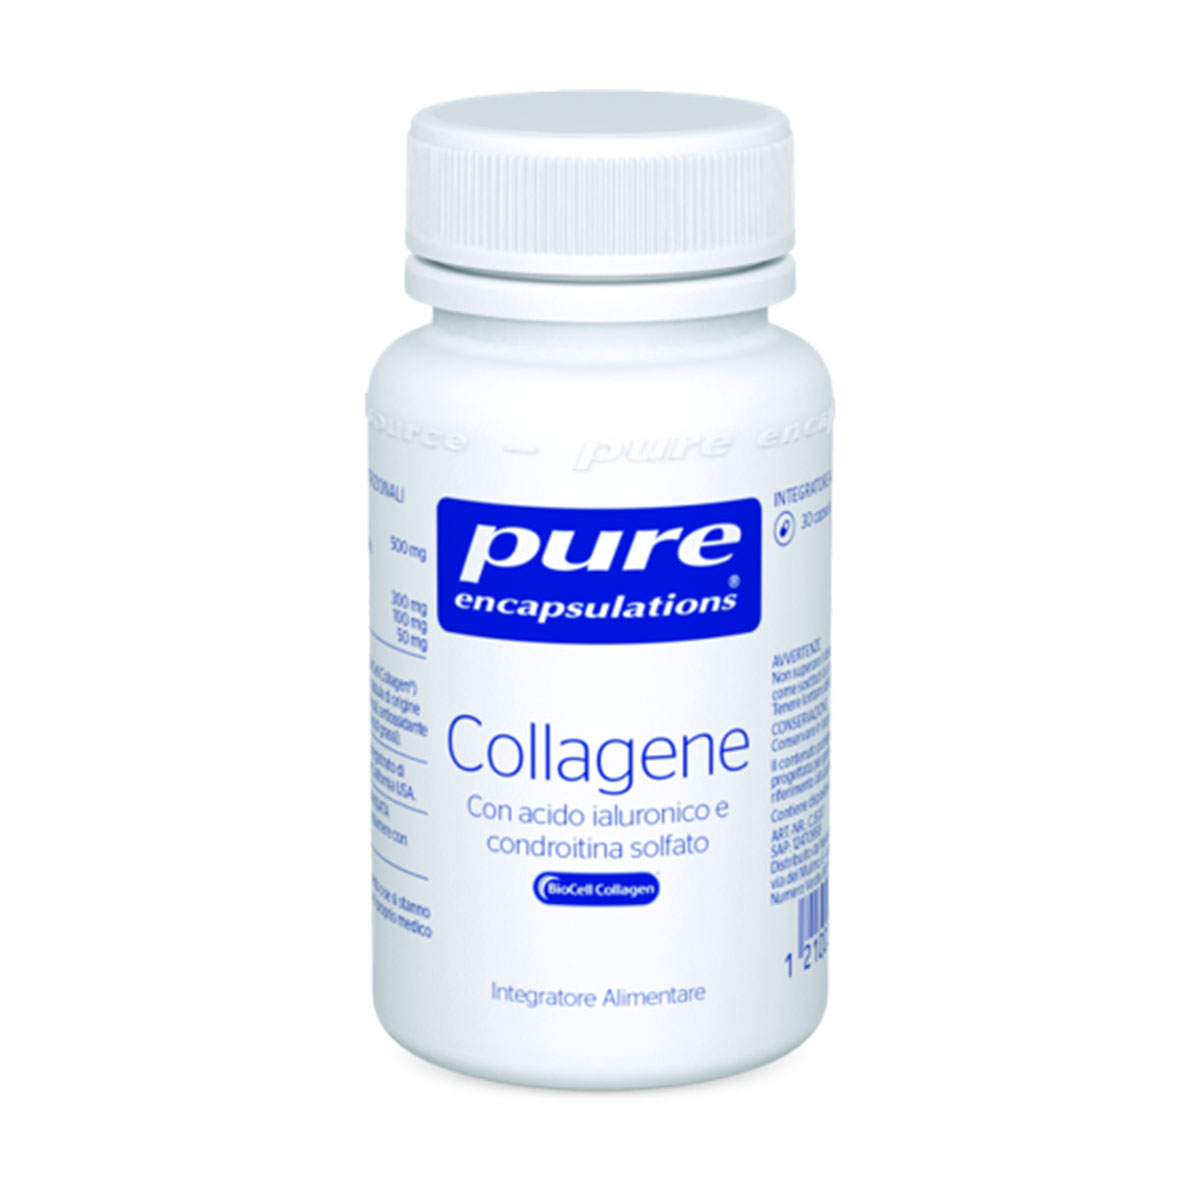 PURE ENCAPSULATIONS - Collagene